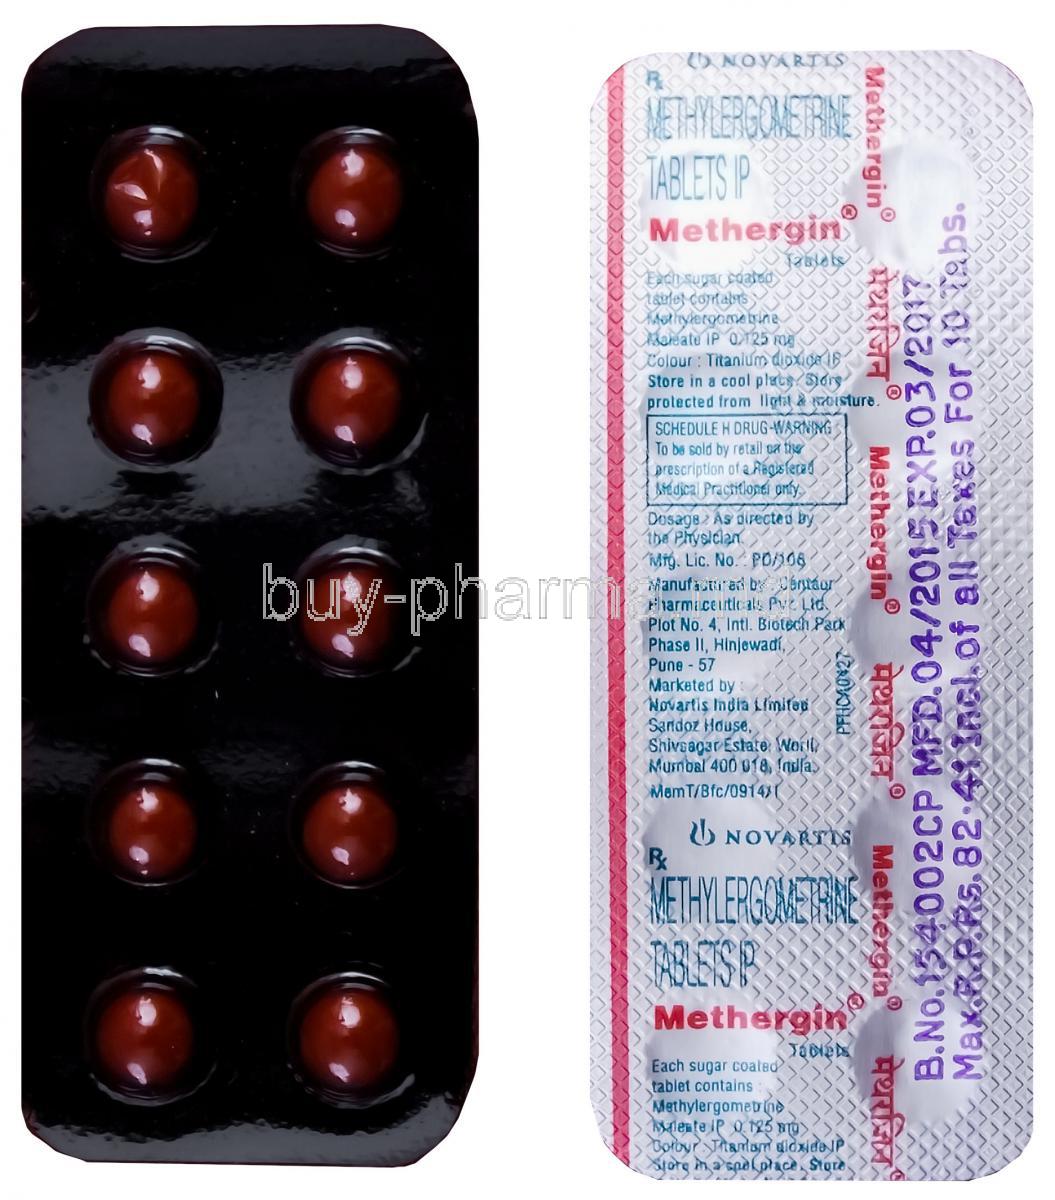 Methergin, Generic Methergine, Methylergometrine 0.125mg Tablet Strip